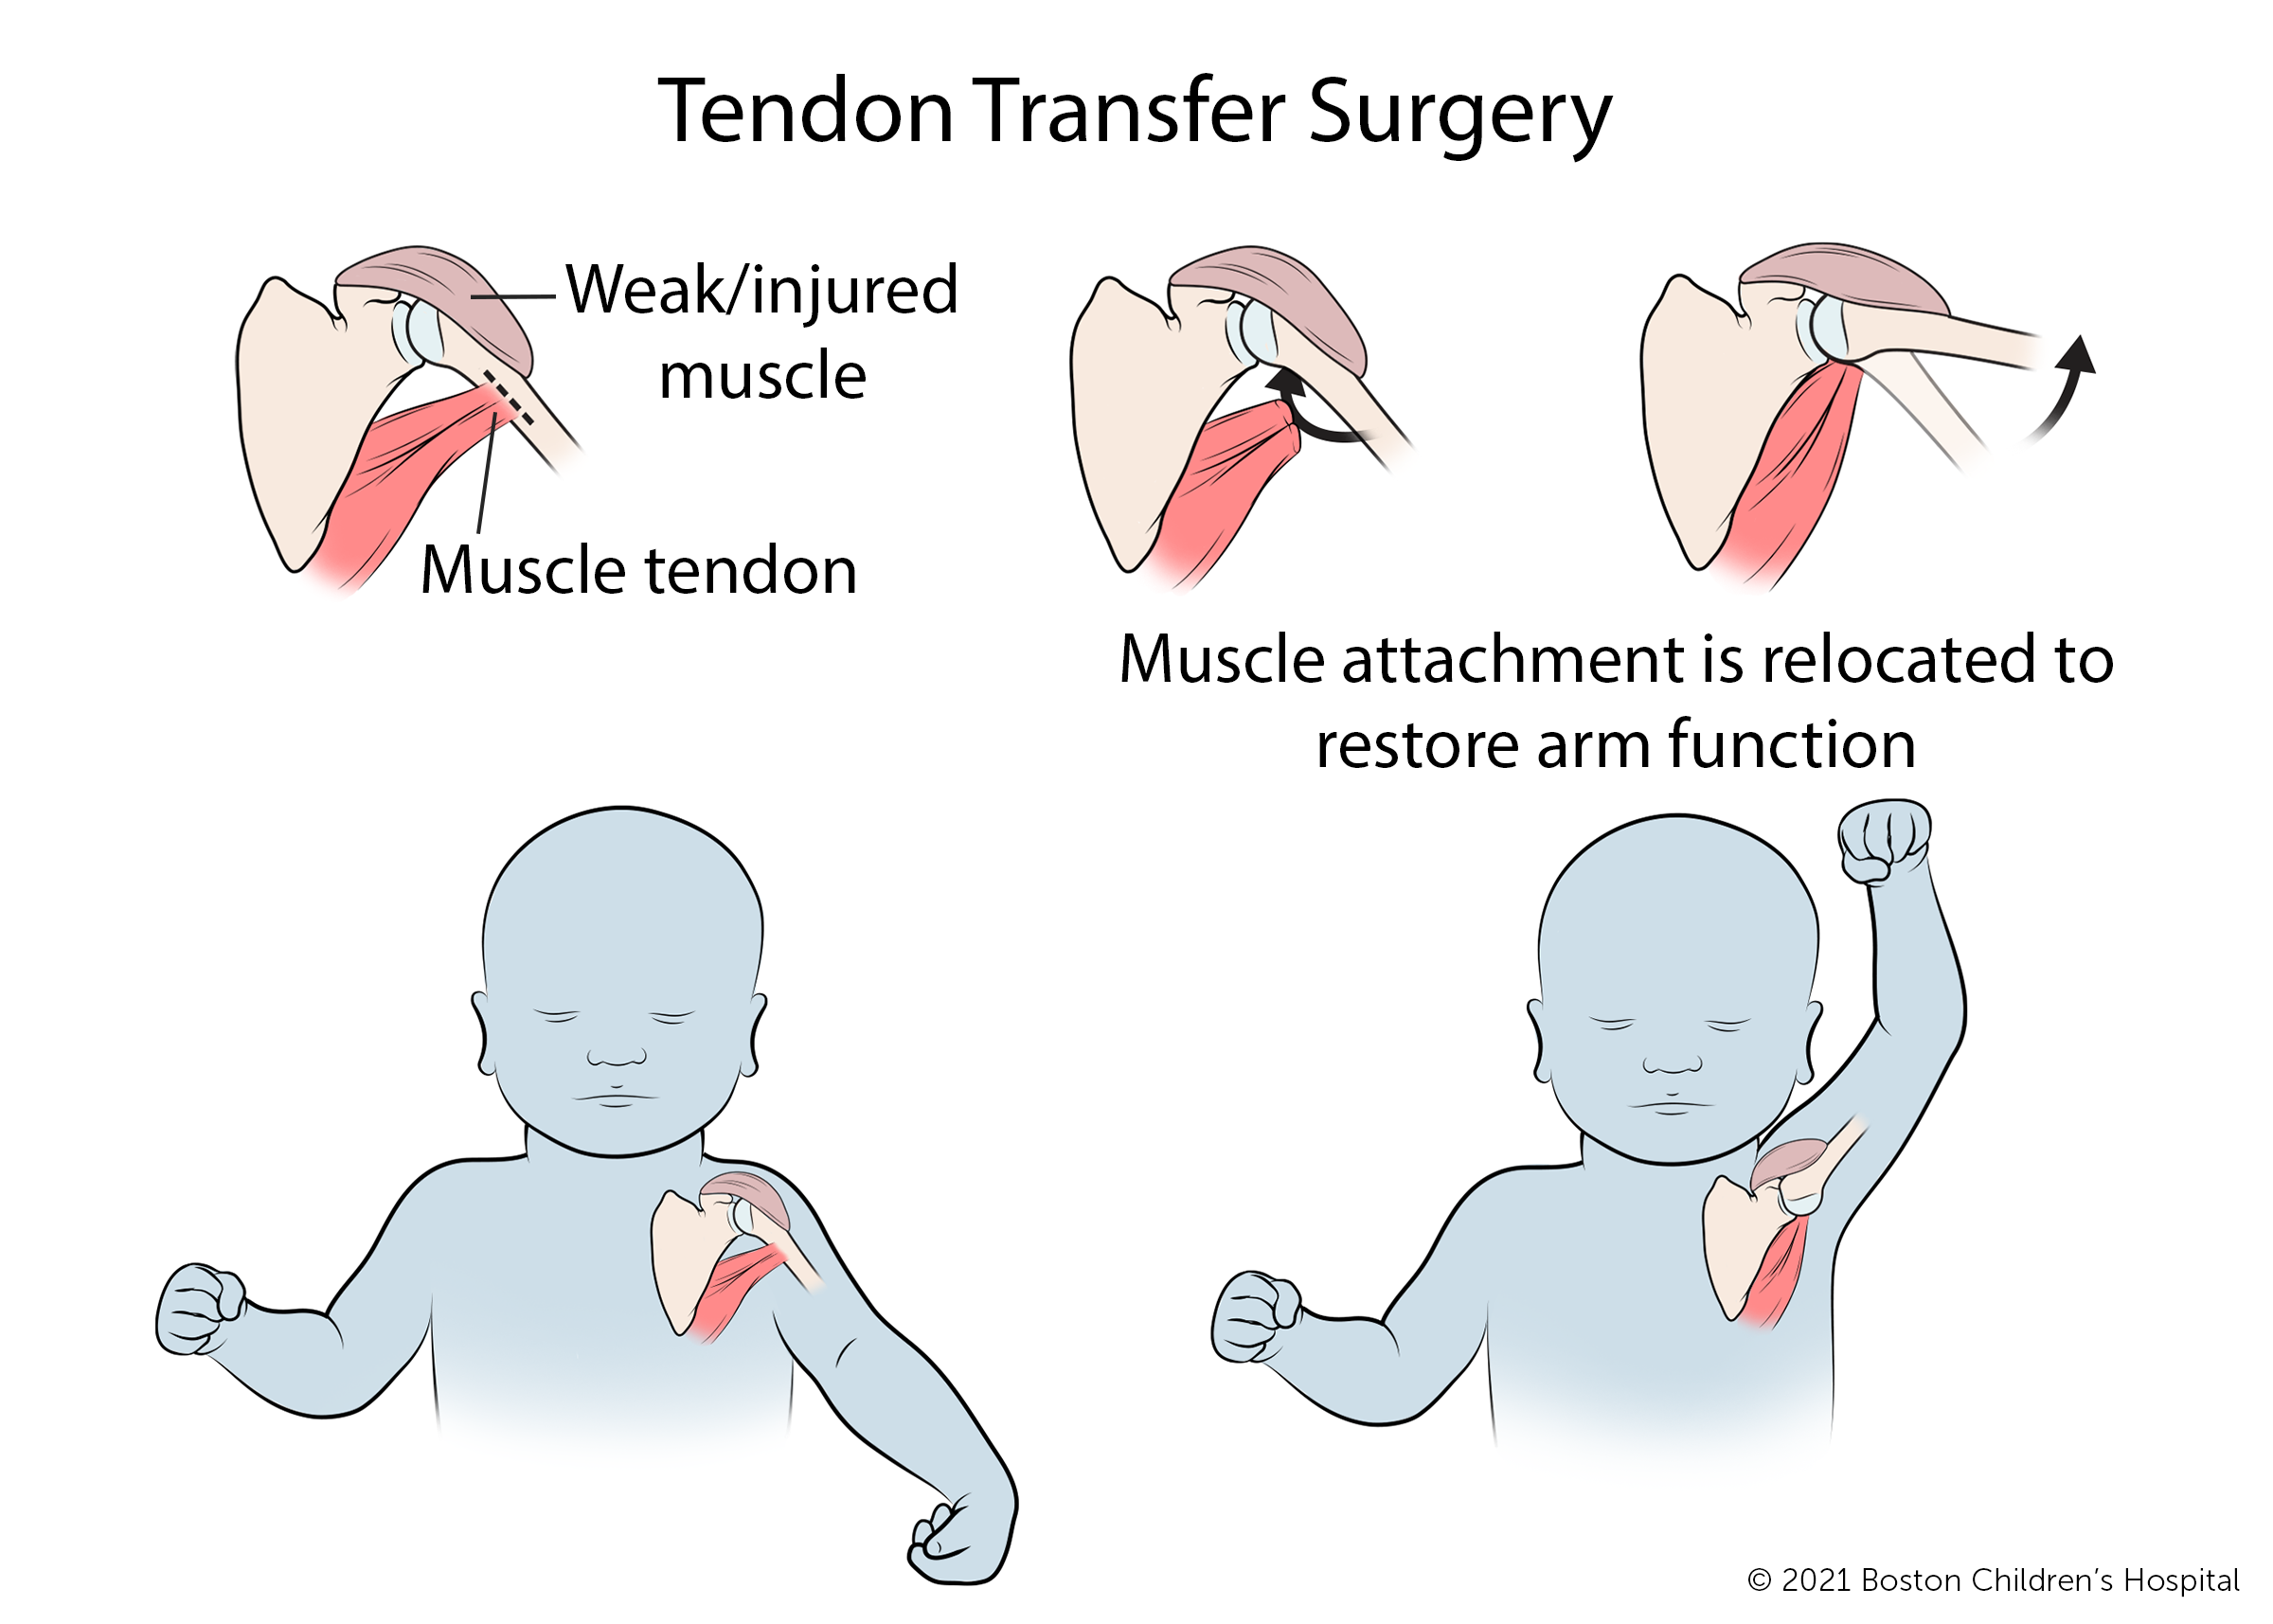 肌腱转移手术是将弱肌或损伤肌的肌腱与正常附着点分离，在新的位置重新附着，以恢复手臂功能。